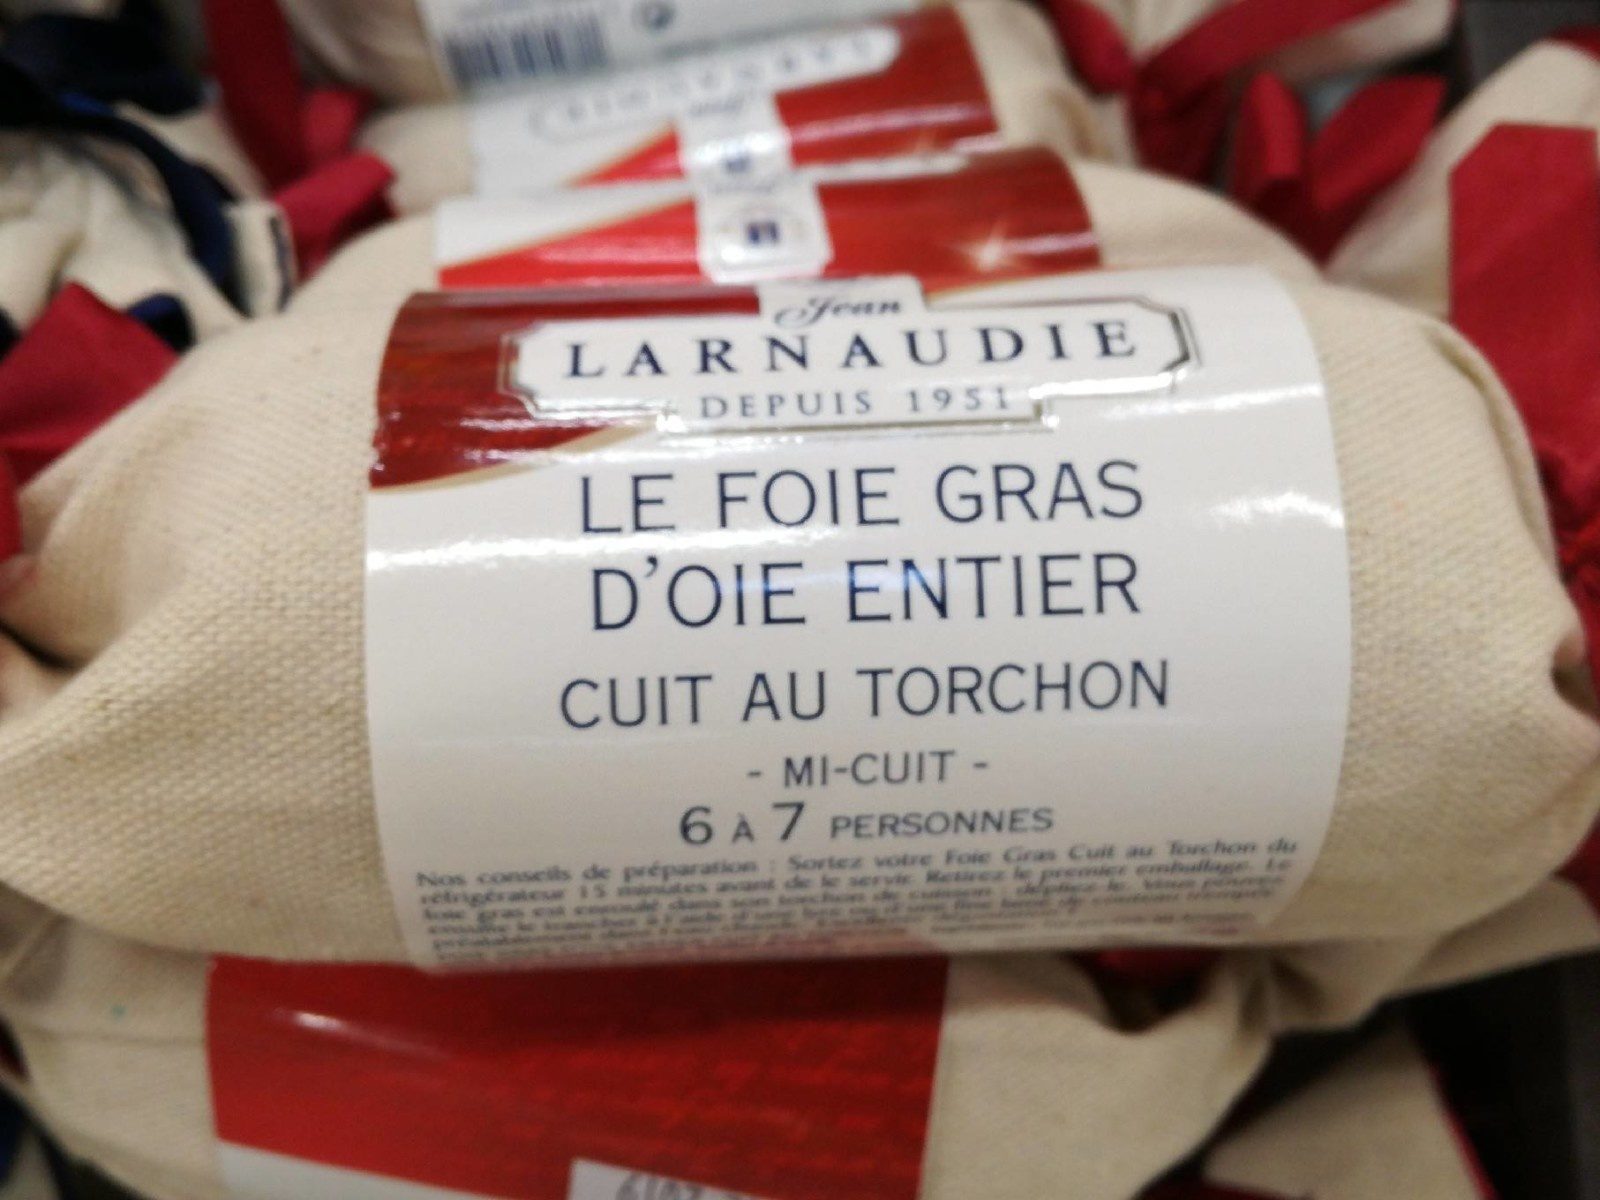 Fois gras d'oie entier au torchon - Product - fr